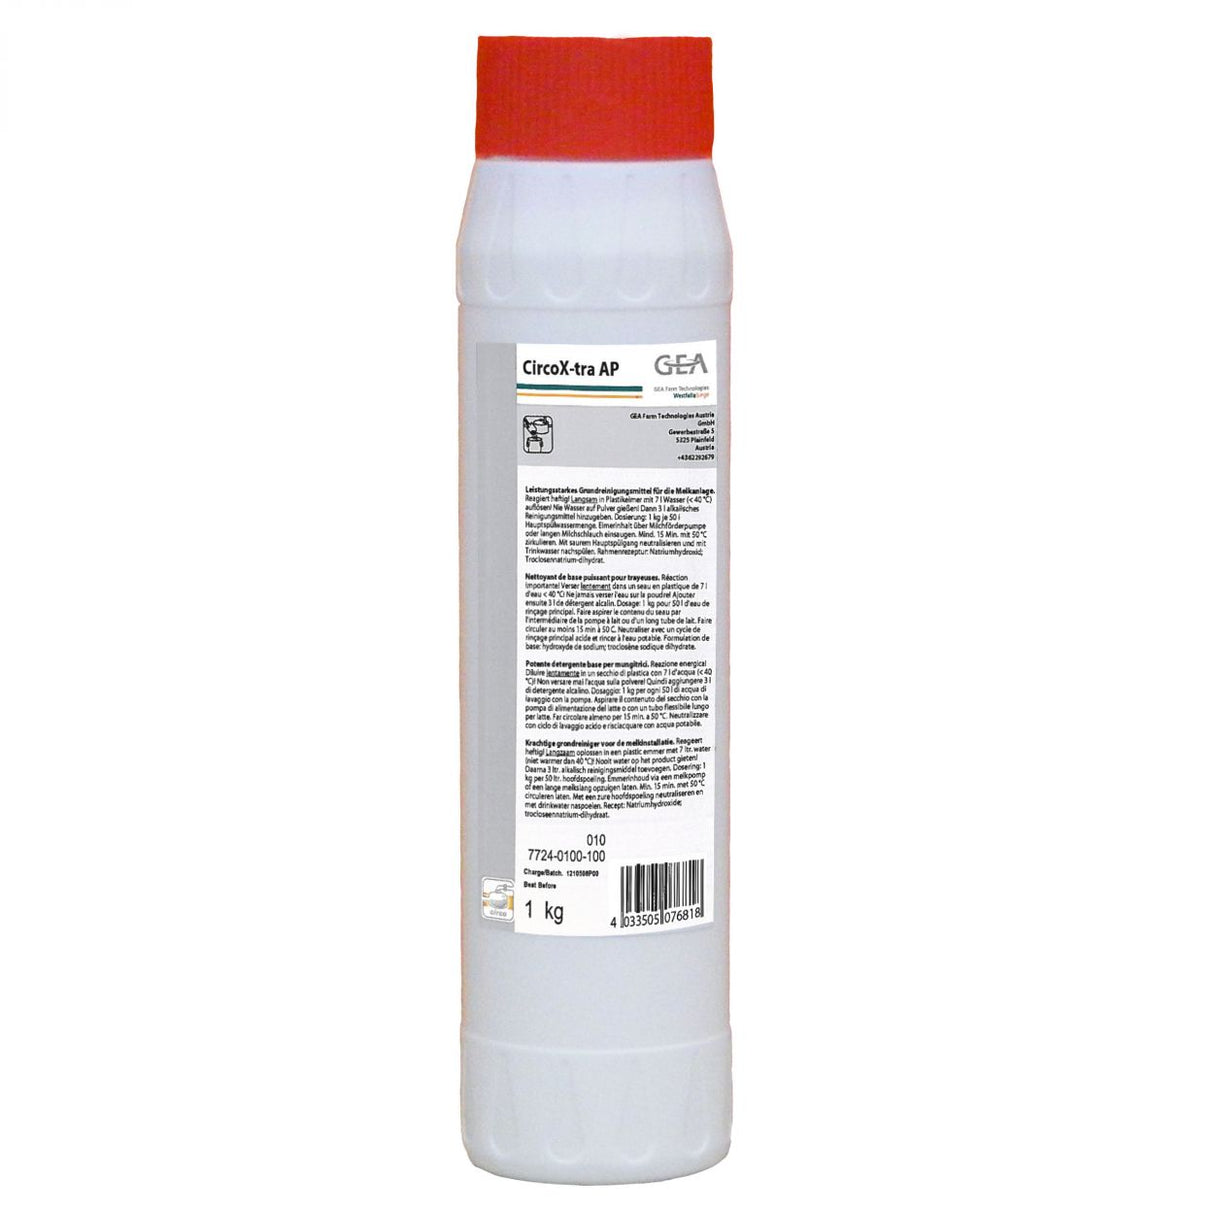 GEA CircoX-tra AP Reinigungsmittel 1 kg Flasche 7724-0100-100